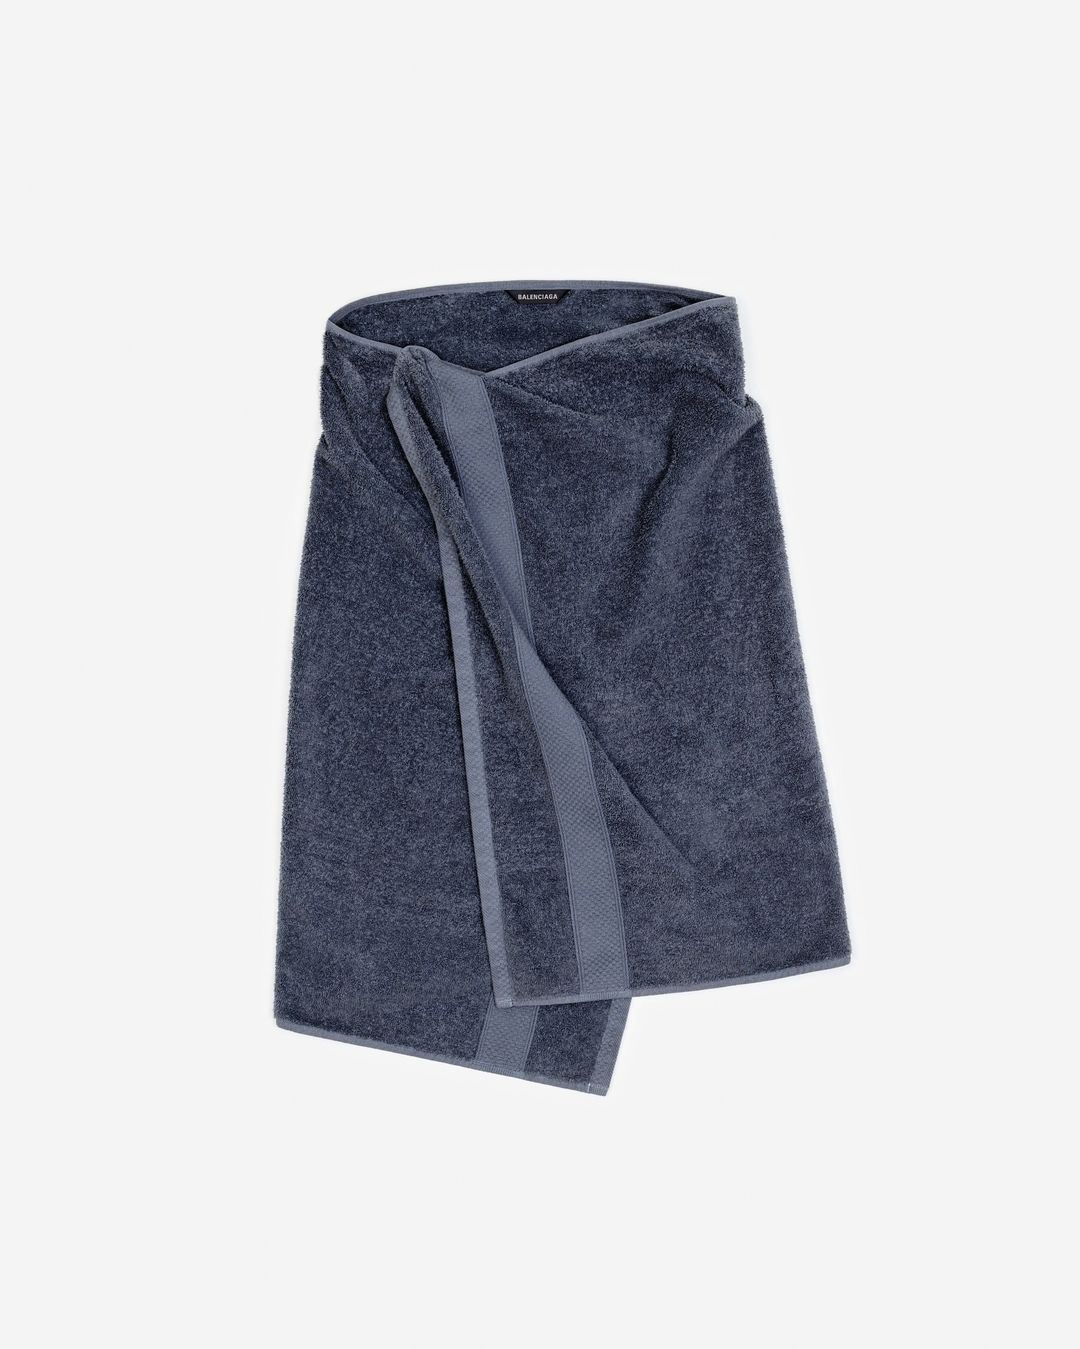 La preventa de la ‘Towel Skirt’ se puede hacer por la página oficial de Balenciaga.